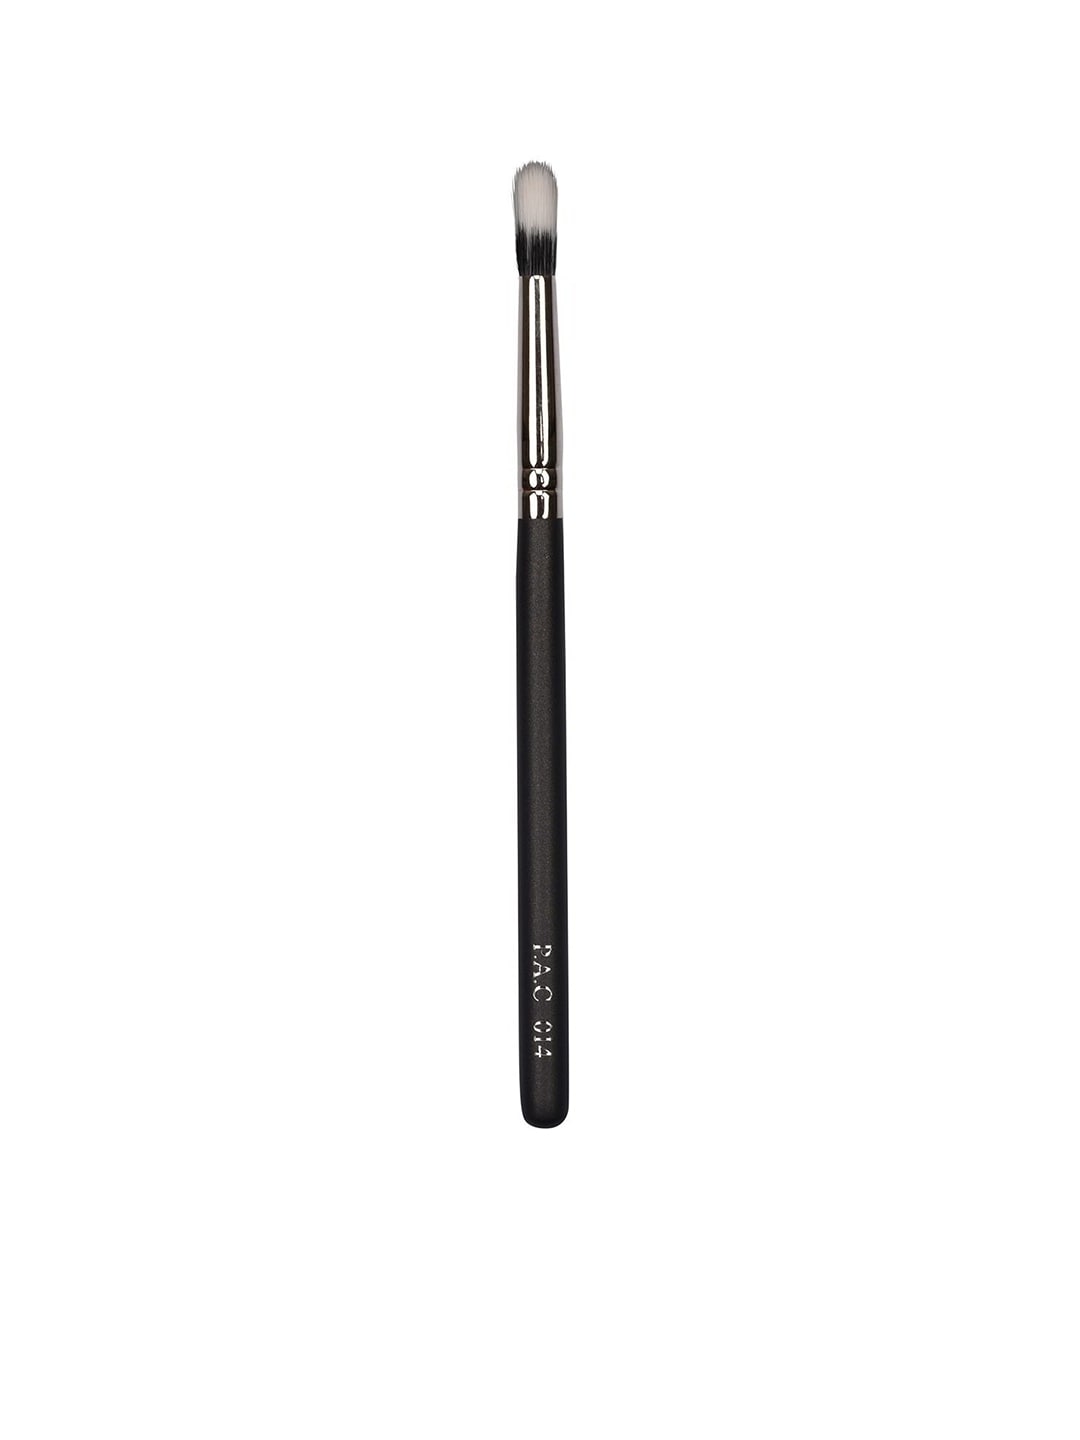 PAC Black Concealer Brush - 014 Price in India